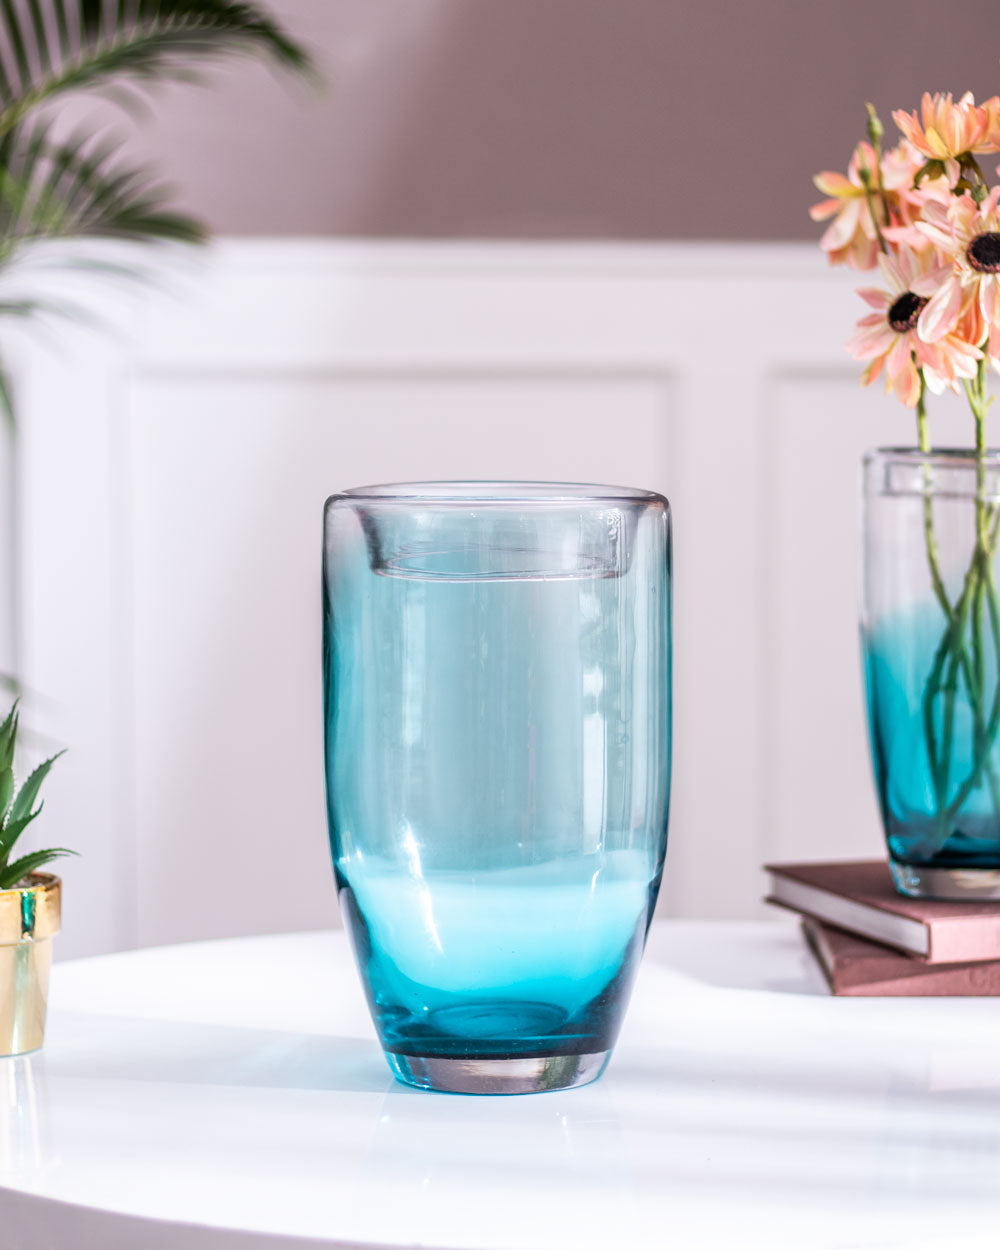 'Nuanta Albastra Bliss' Flower Glass Vase -